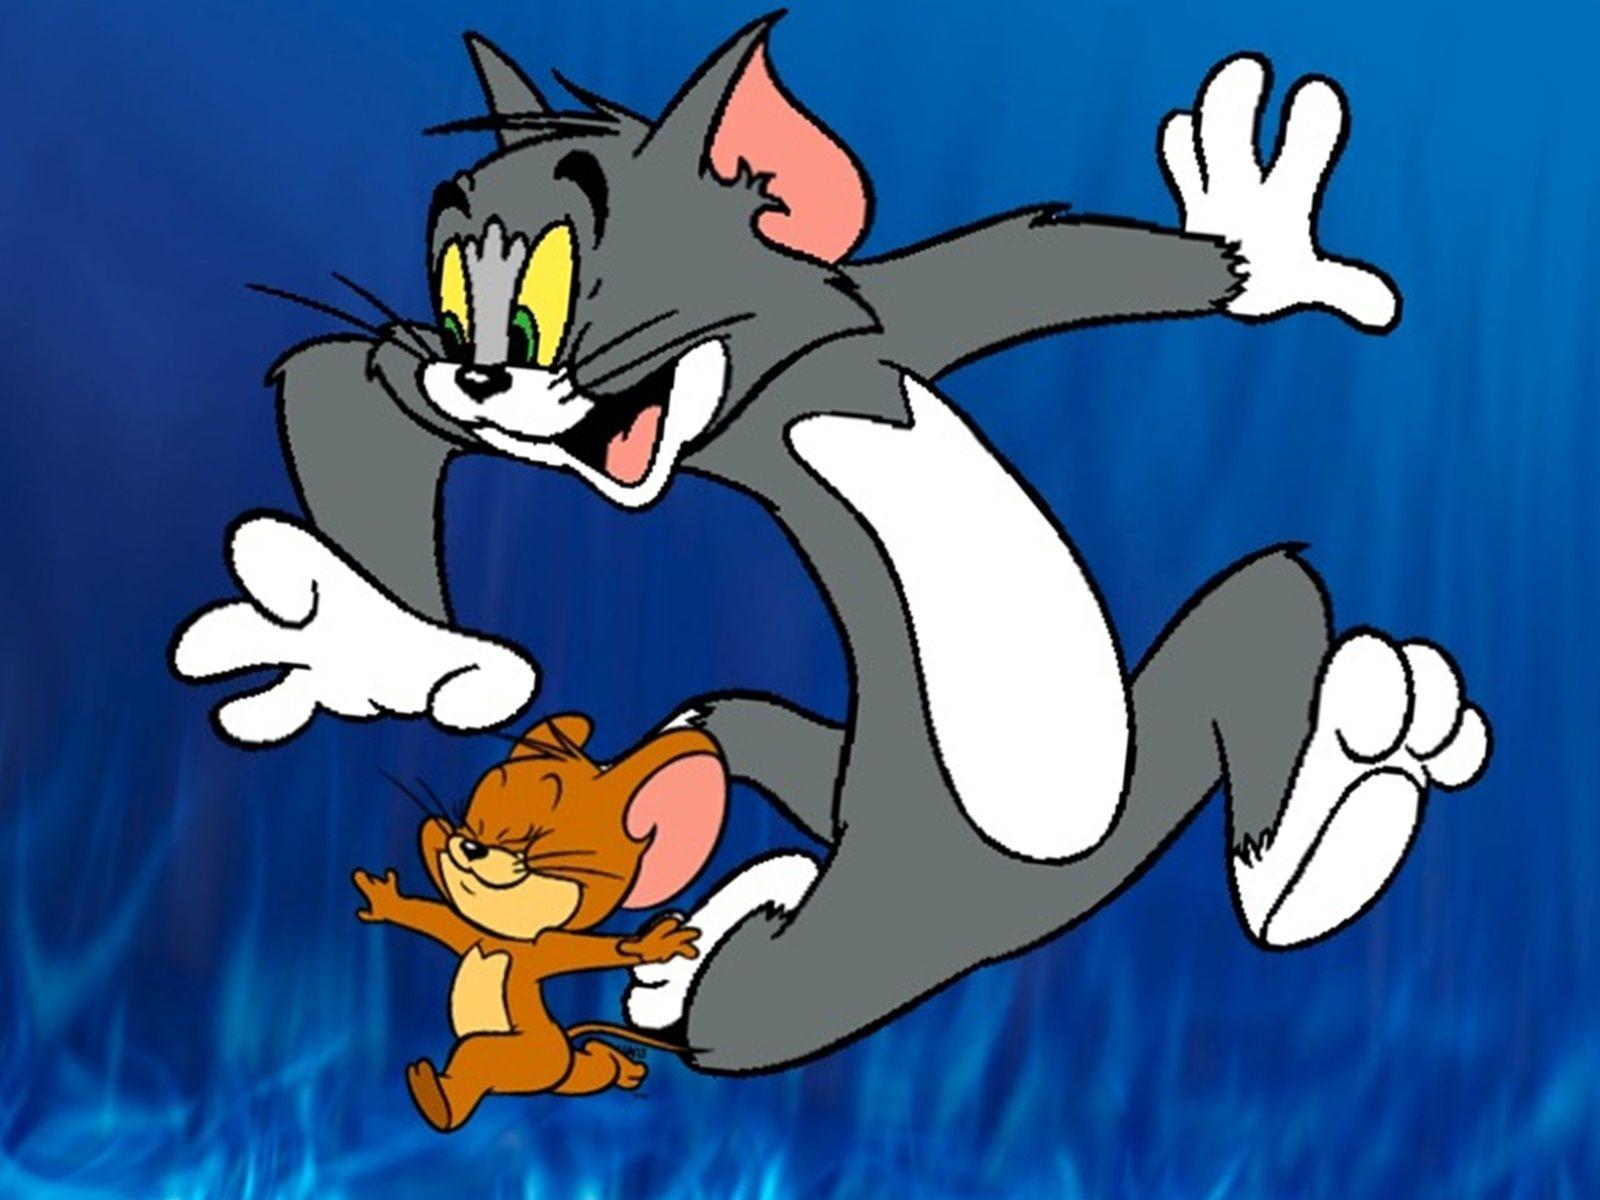 Tom Und Jerry Spiele Online